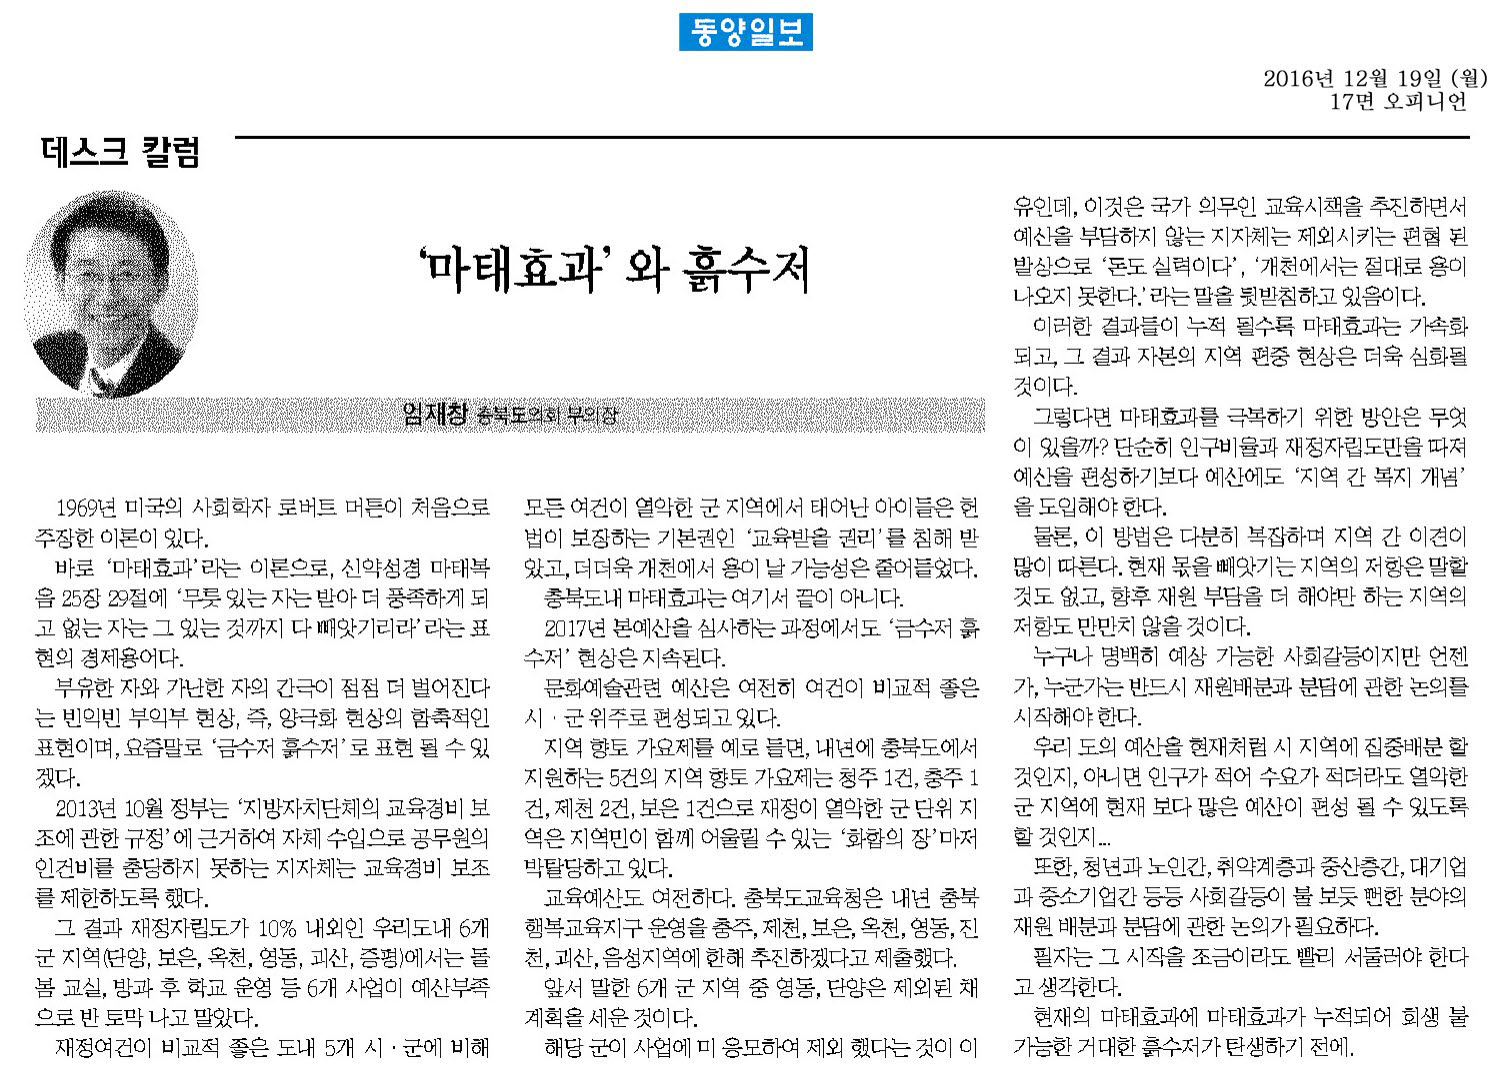 마태효과와 흙수저 - 엄재창 의원(동양일보 2016년 12월 19일) - 1